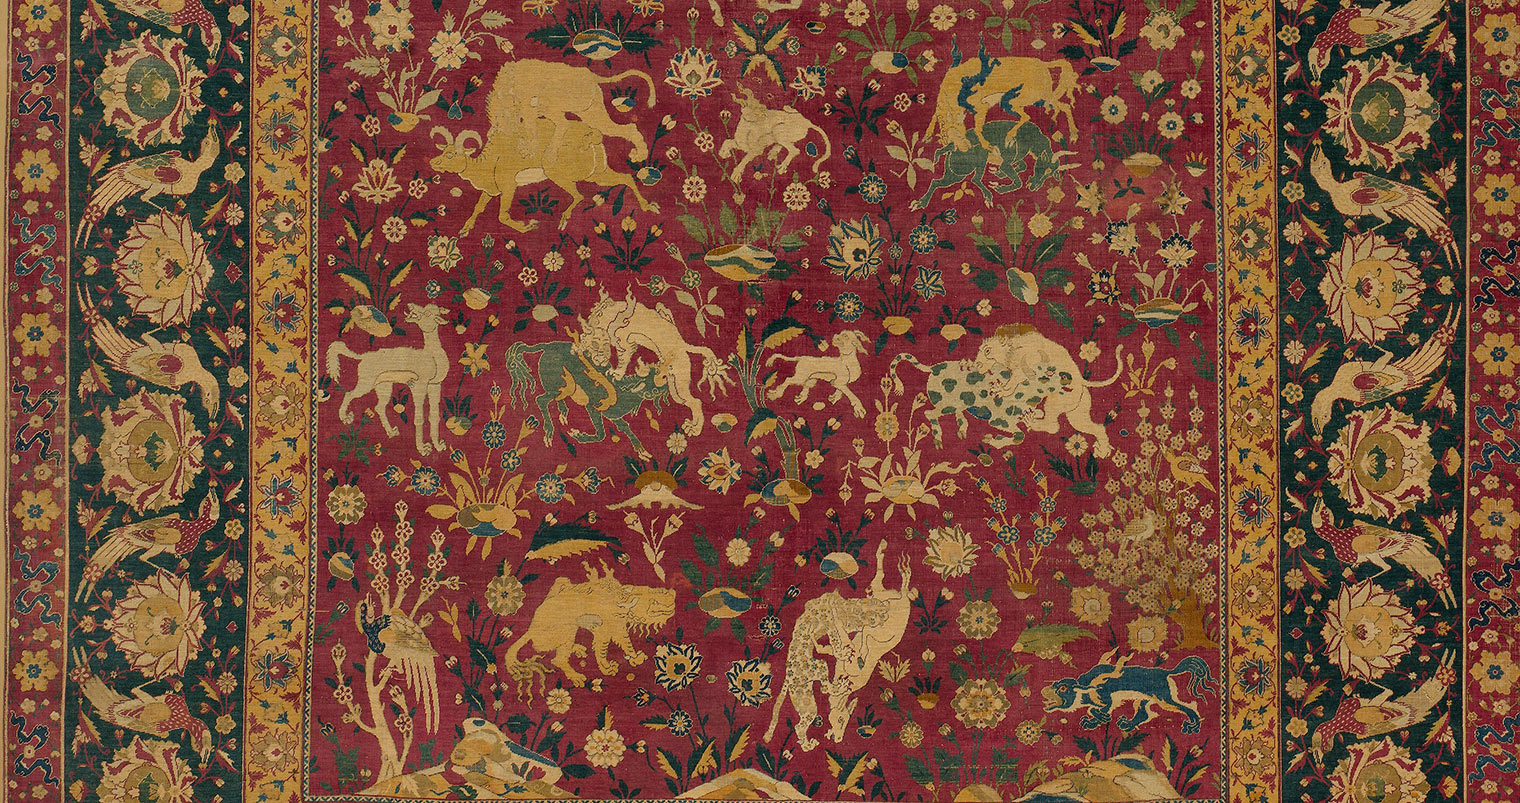 Detail of silk carpet showing animal combat